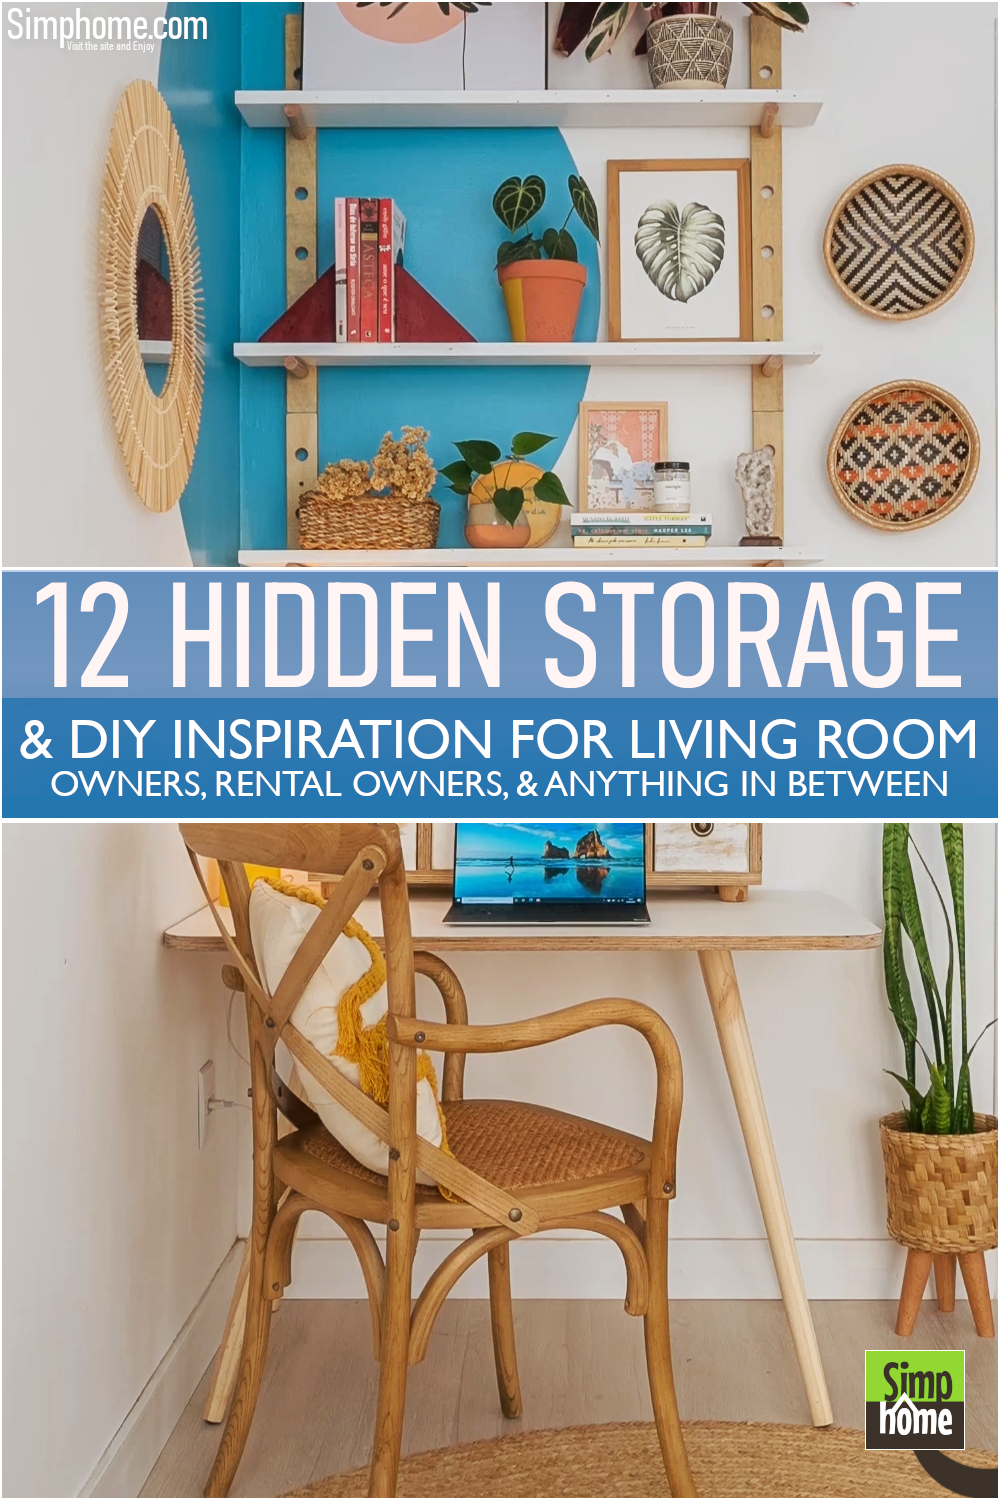 12 Hidden Storage Inspirations DIY For Living Room Vvia Simphome.com